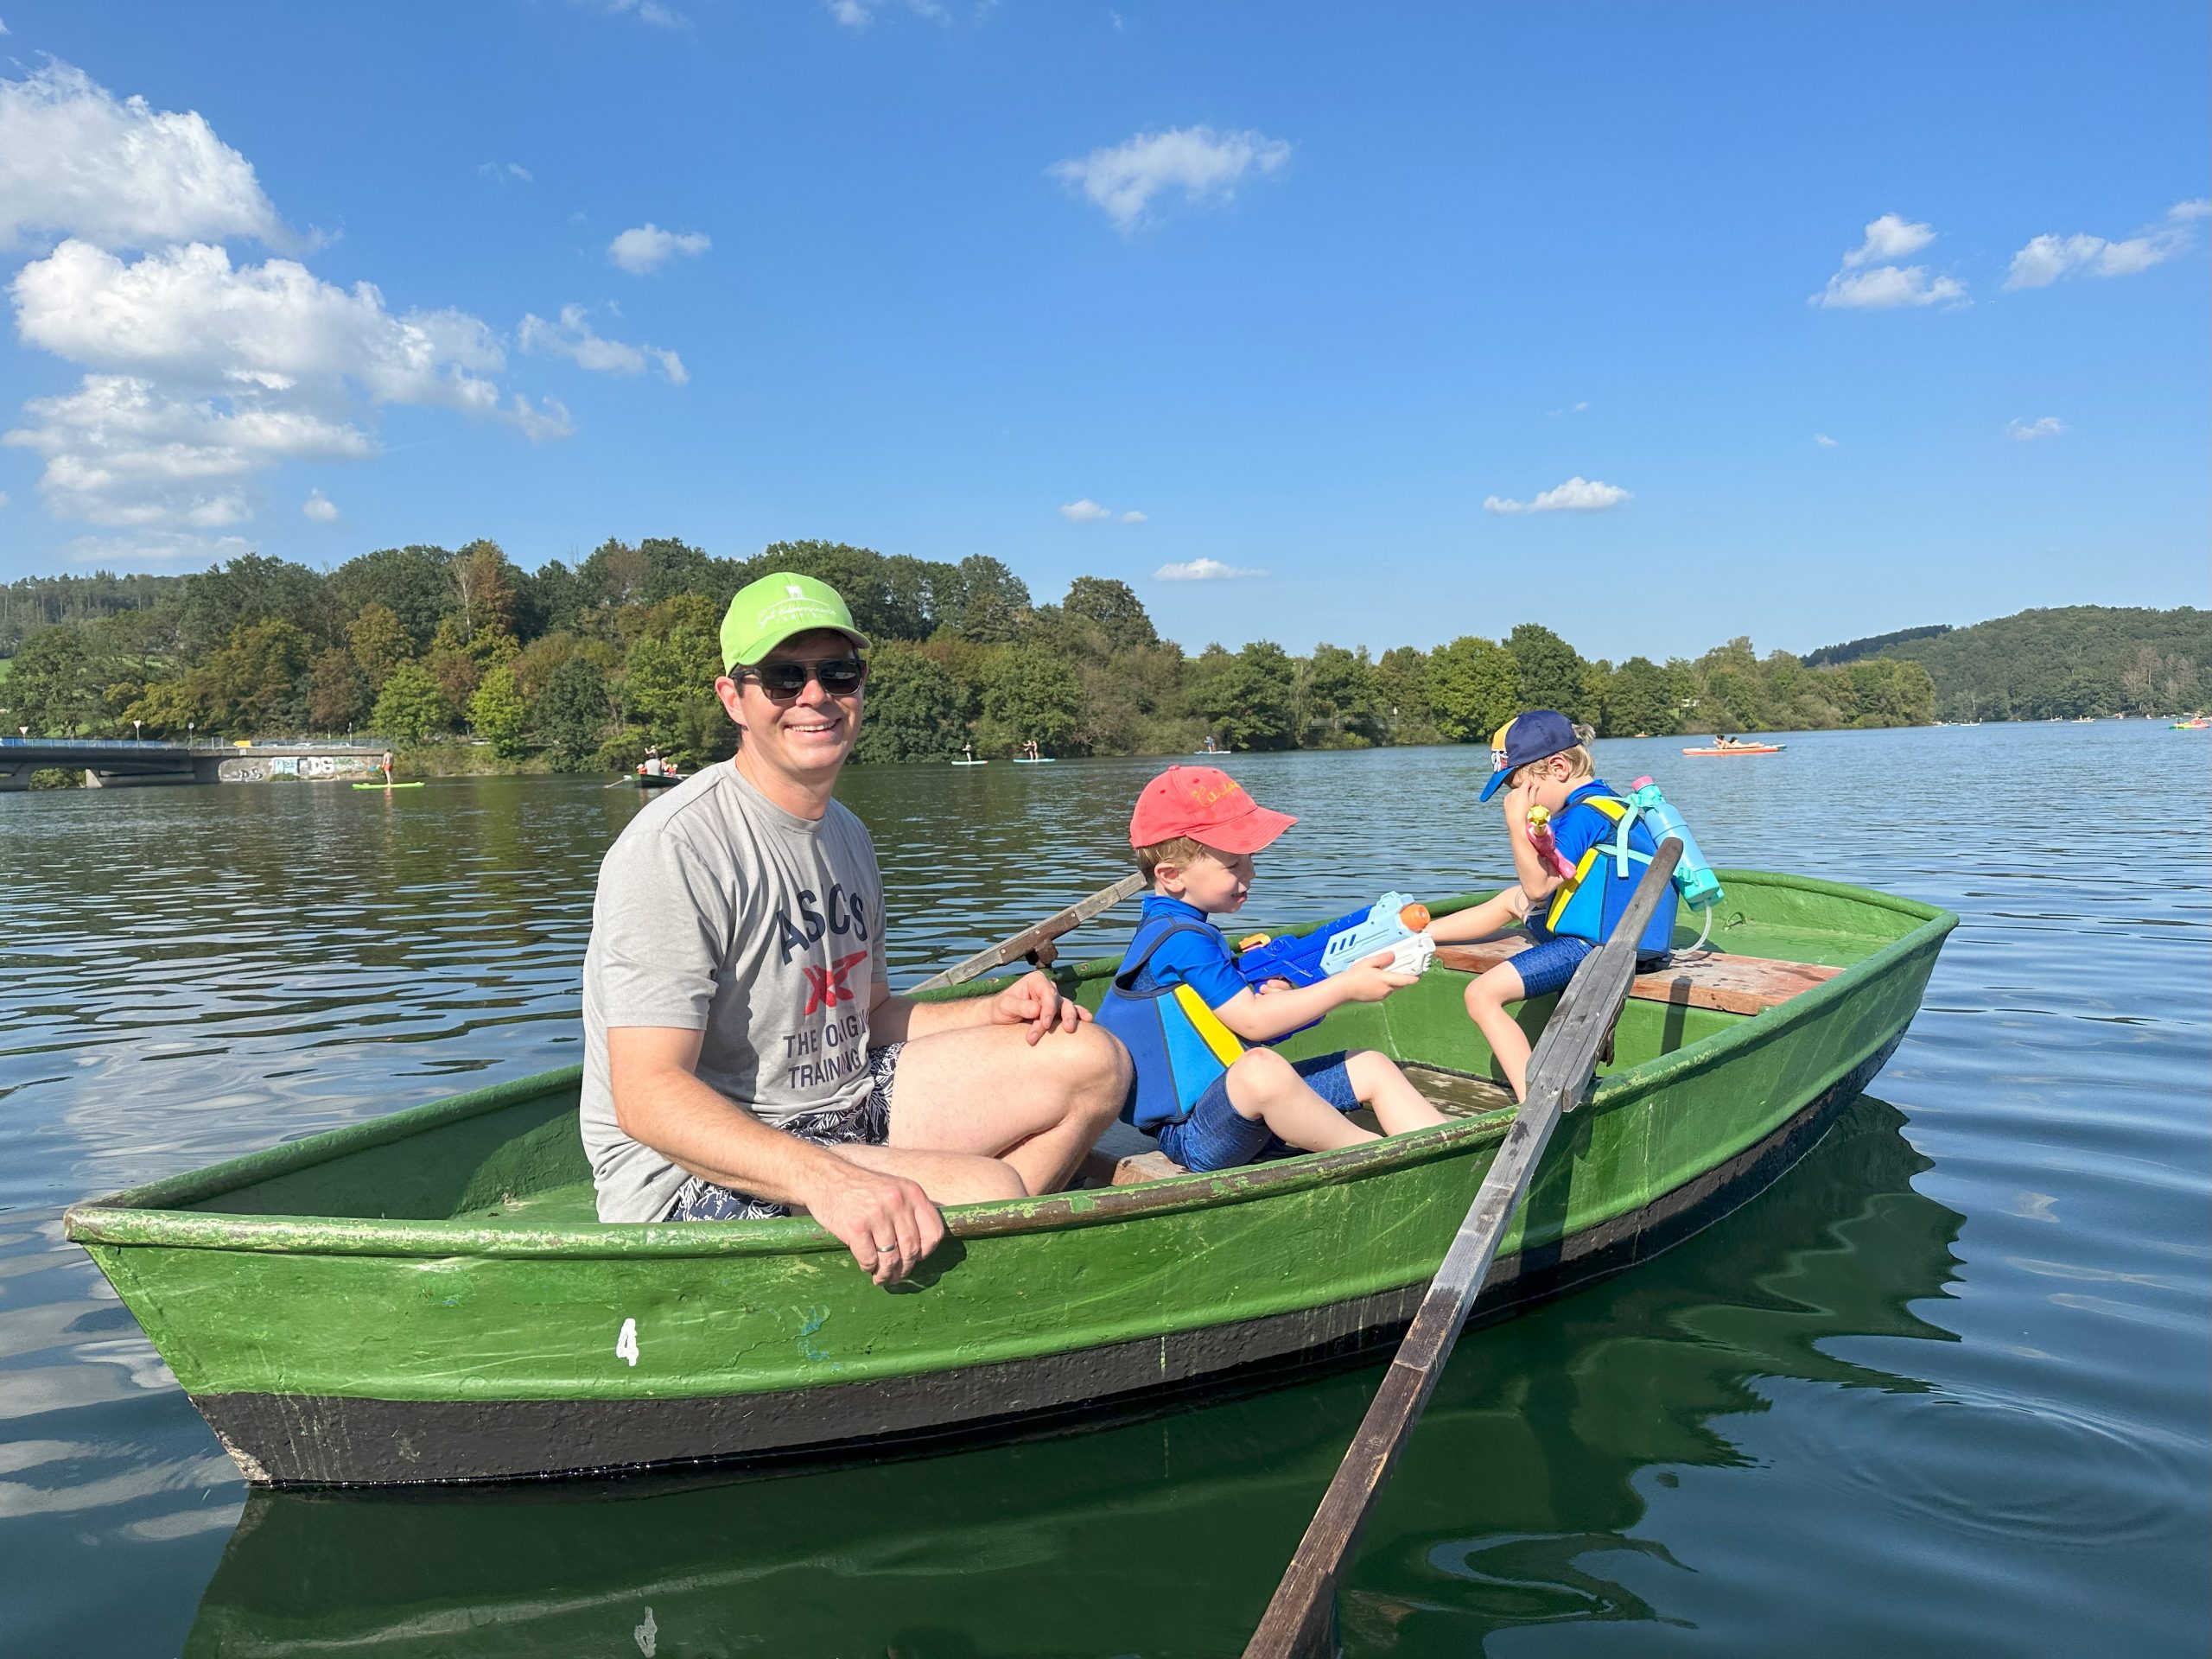 Ruderboot auf Listersee mit Vatern und Kinder